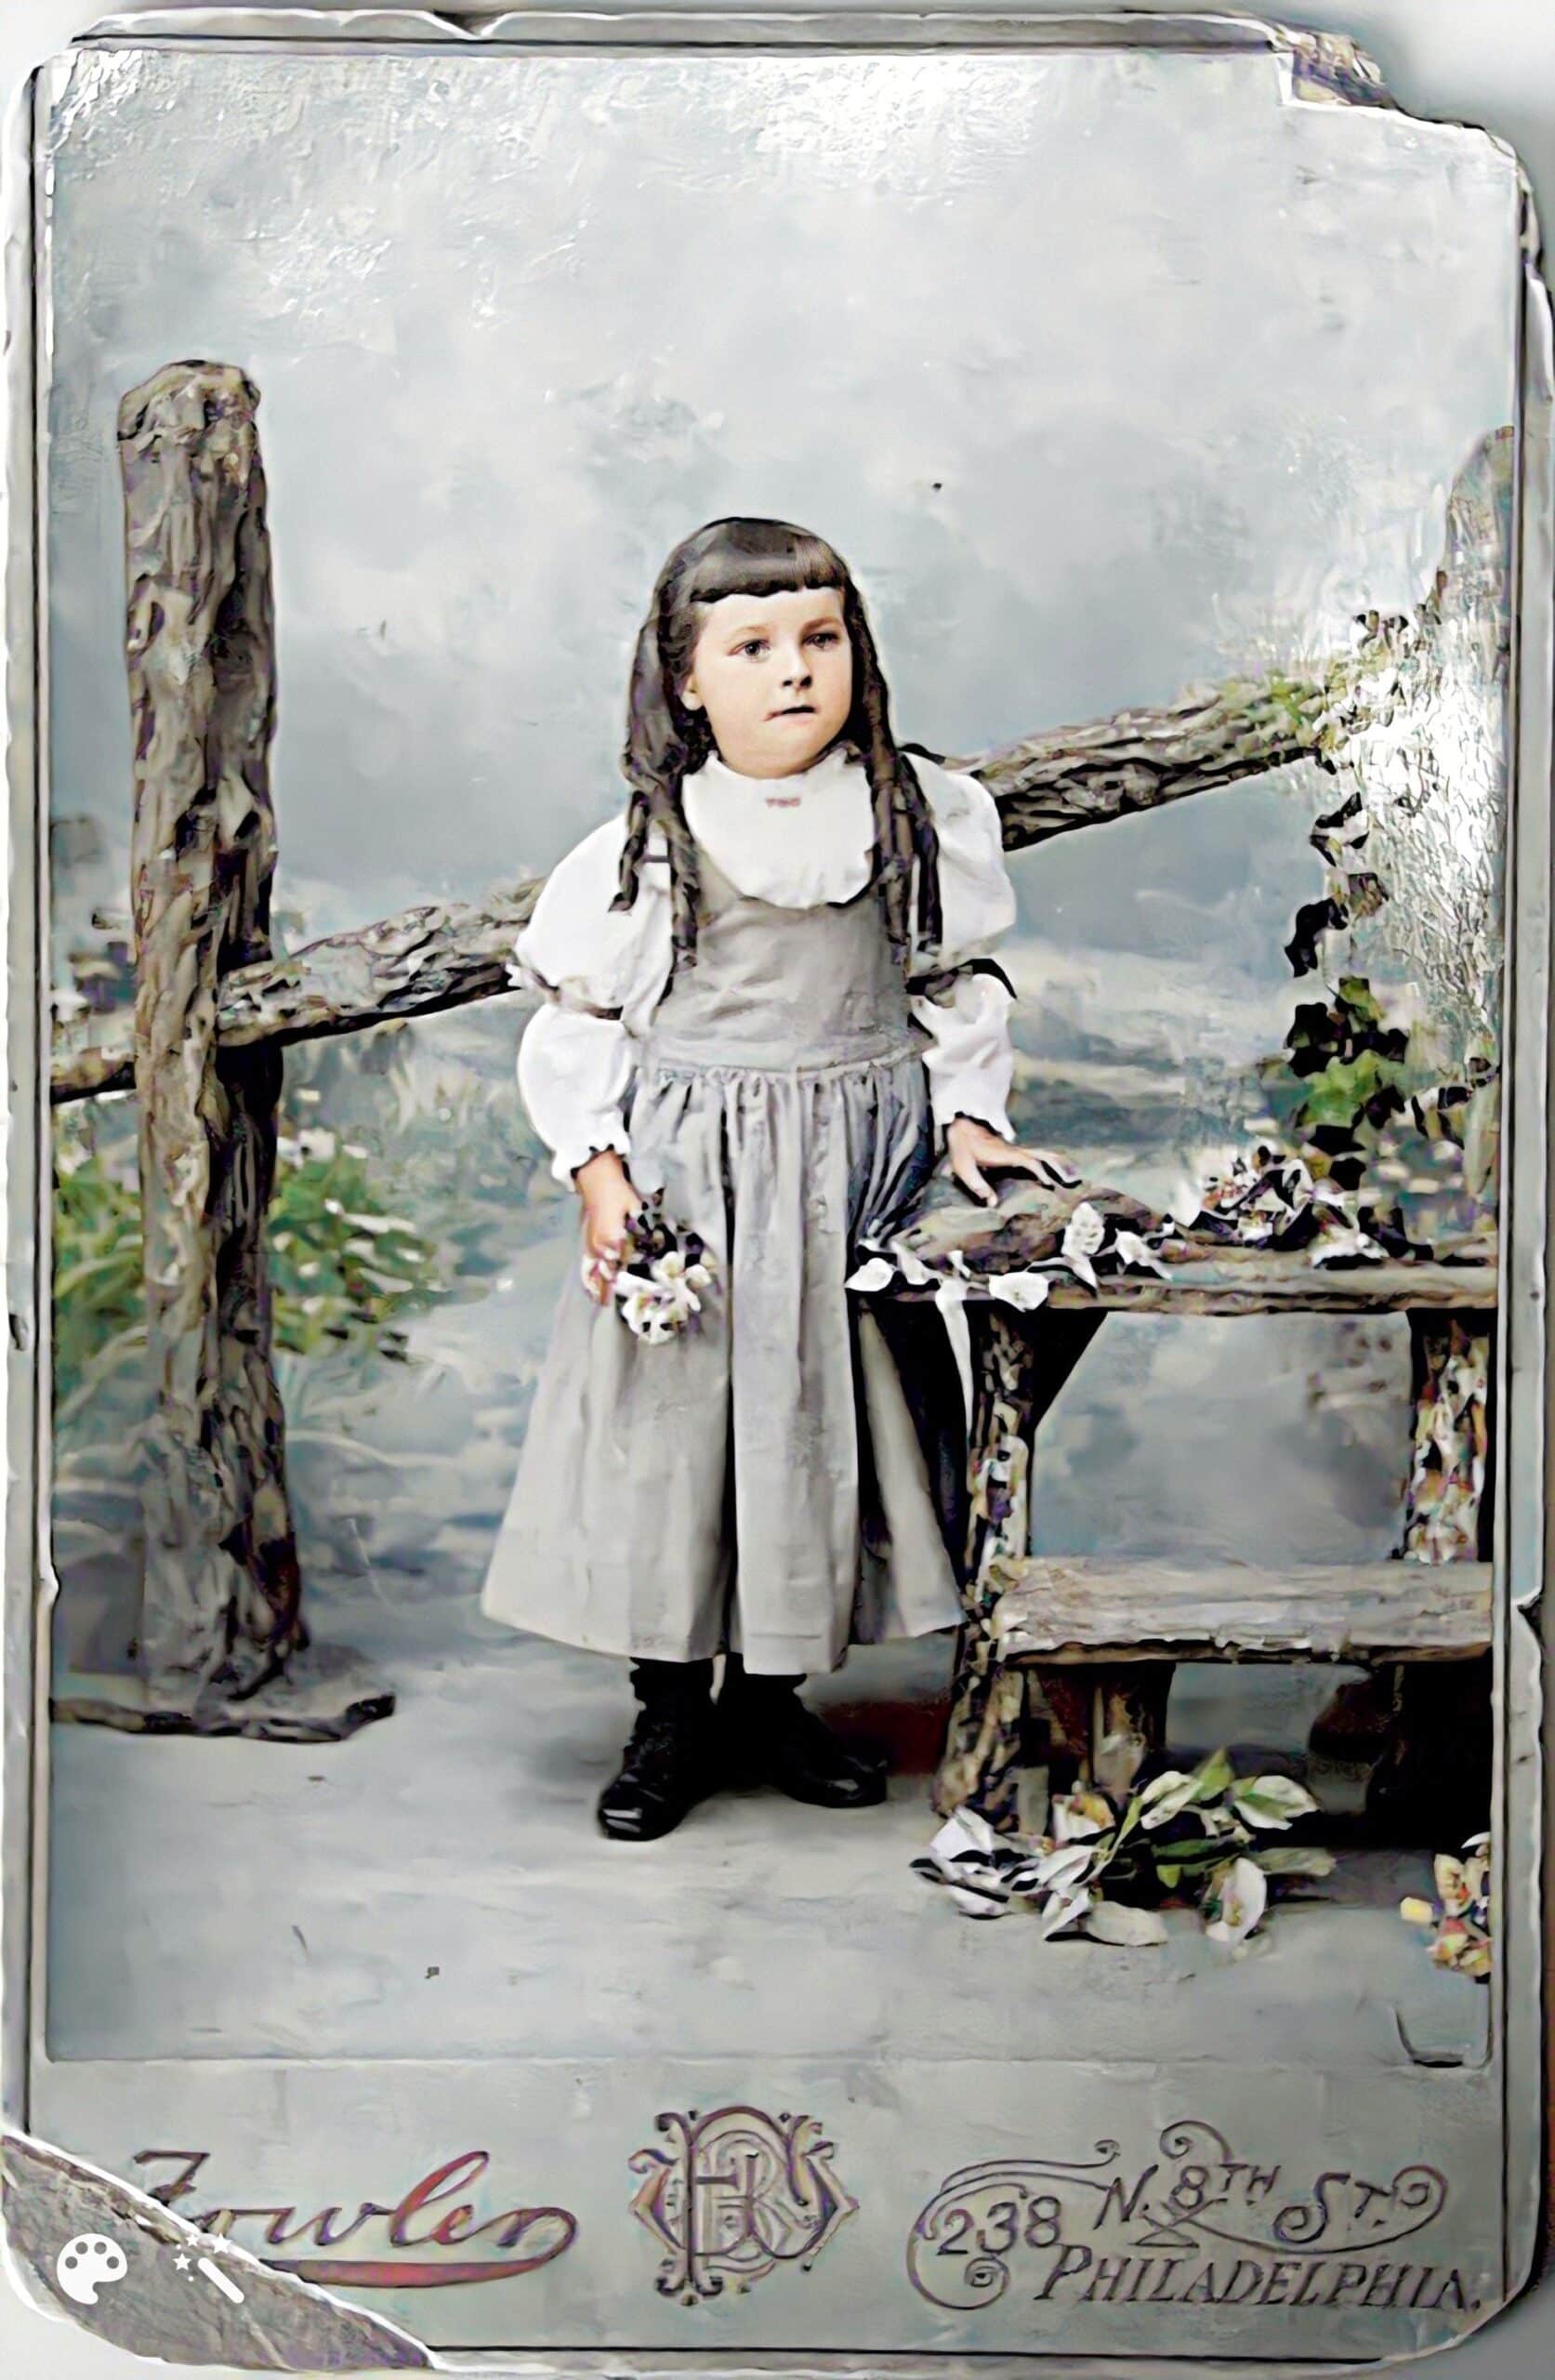 Reba vers 1893. Photo améliorée et colorisée par MyHeritage.